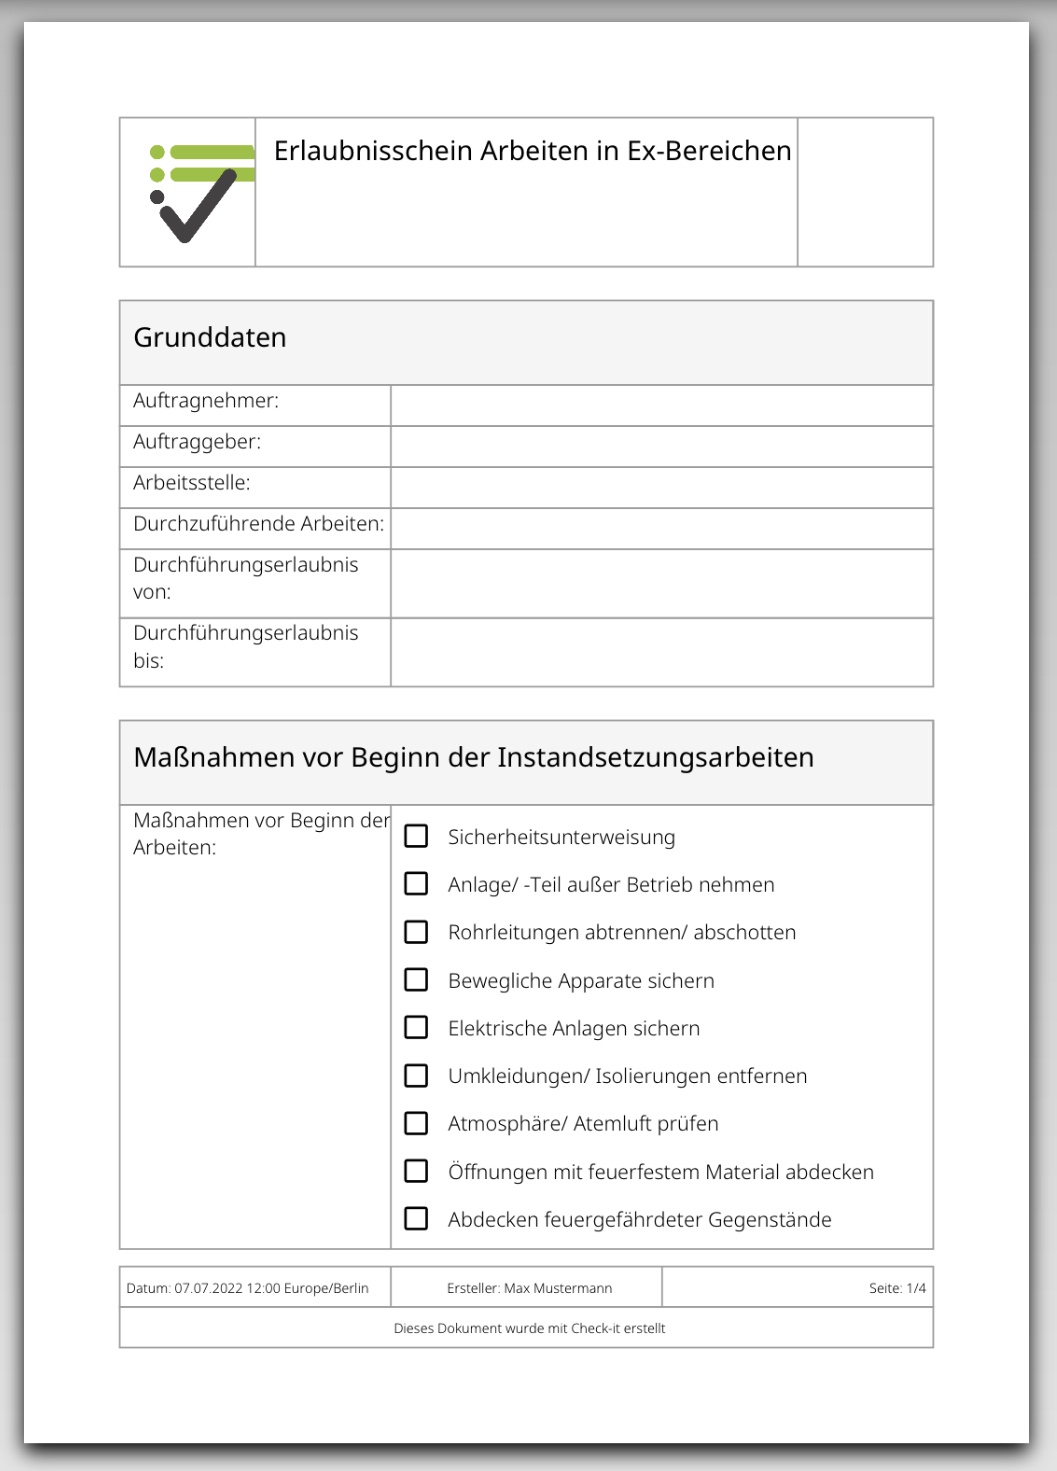 Das Bild zeigt die PDF-Datei, die nach dem Ausfüllen der Checkliste "Erlaubnisschein Arbeiten in Ex-Bereichen" ausgegeben wird.